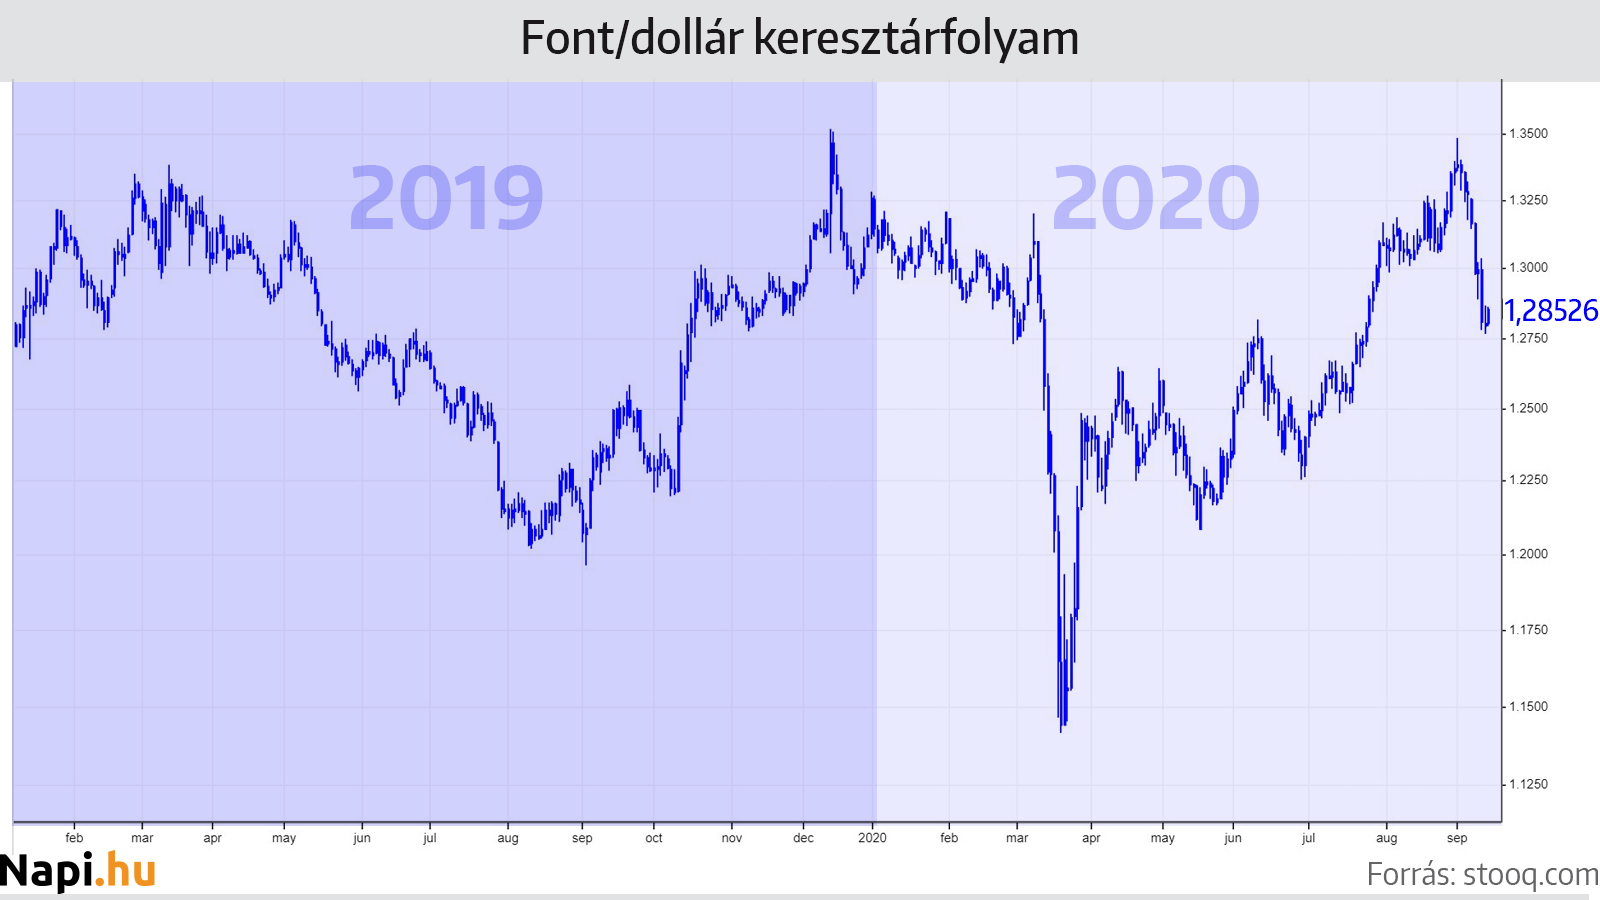 Az arany dollár/forint árfolyamkockázata